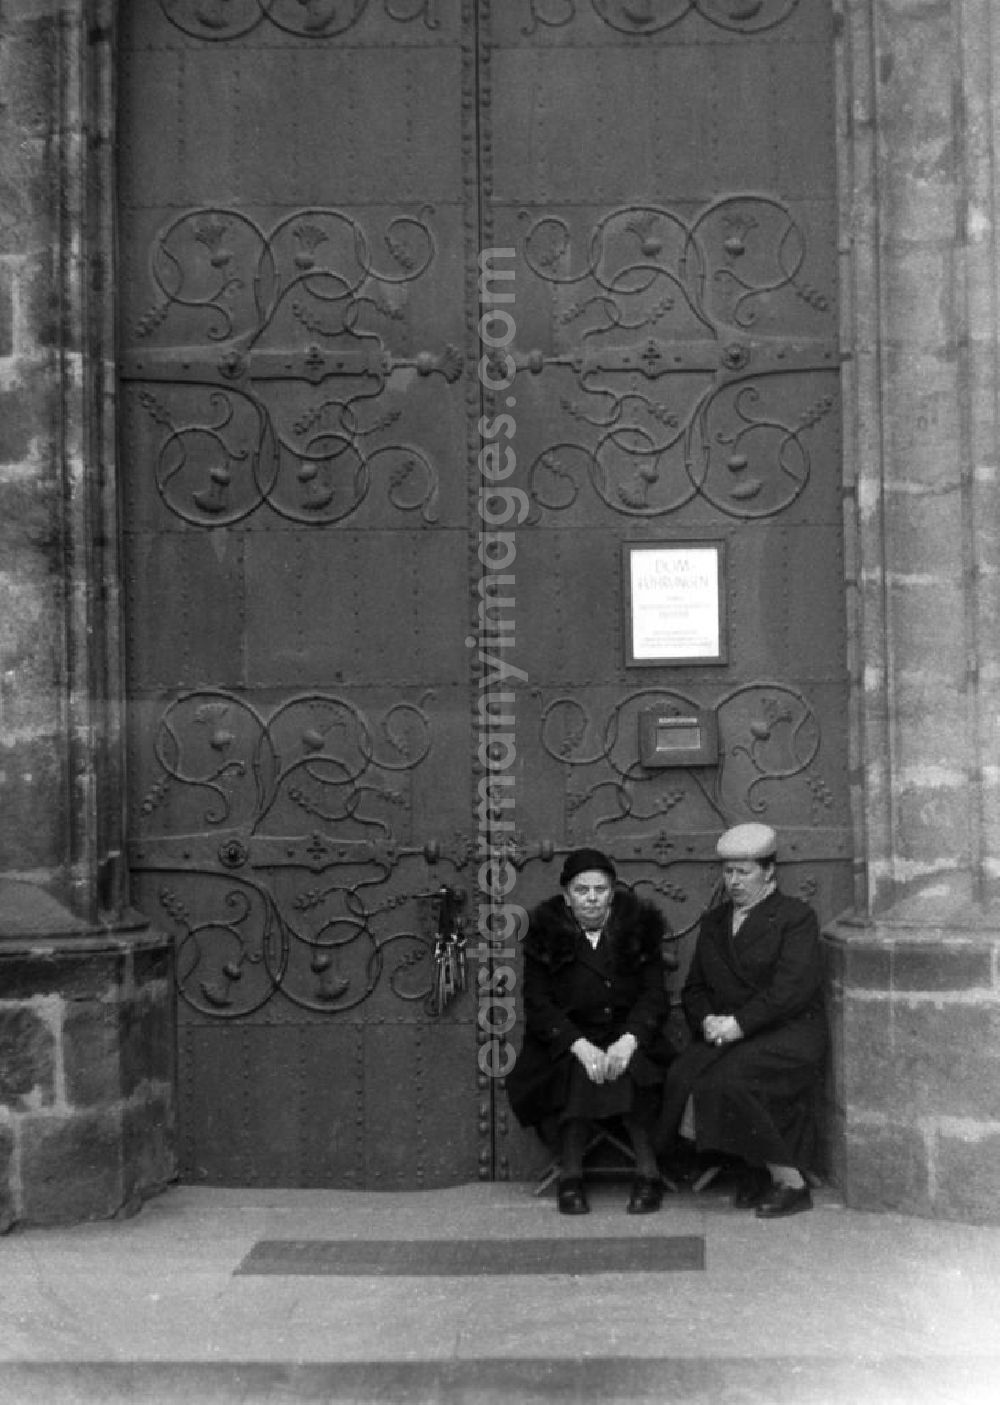 GDR picture archive: Meißen - Zwei ältere Damen sitzen vor dem Portal des Meißner Doms. Auf einem Aushang werden Domführungen angeboten, im Schloß hängt ein riesiger Schlüsselbund.